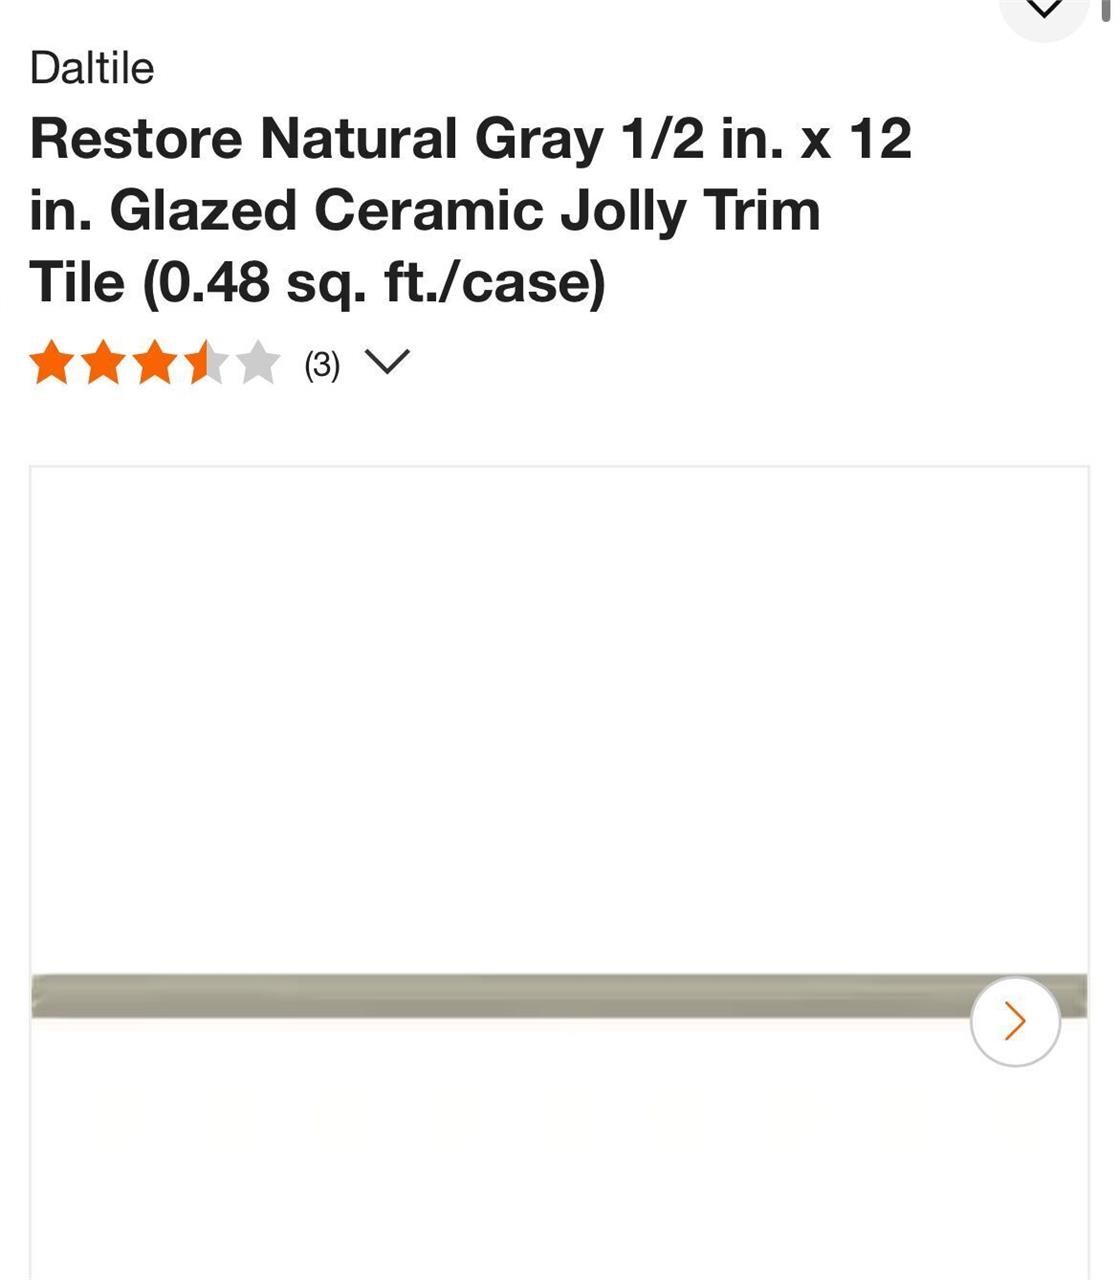 Restore Natural Gray Ceramic Jolly Trim Tile